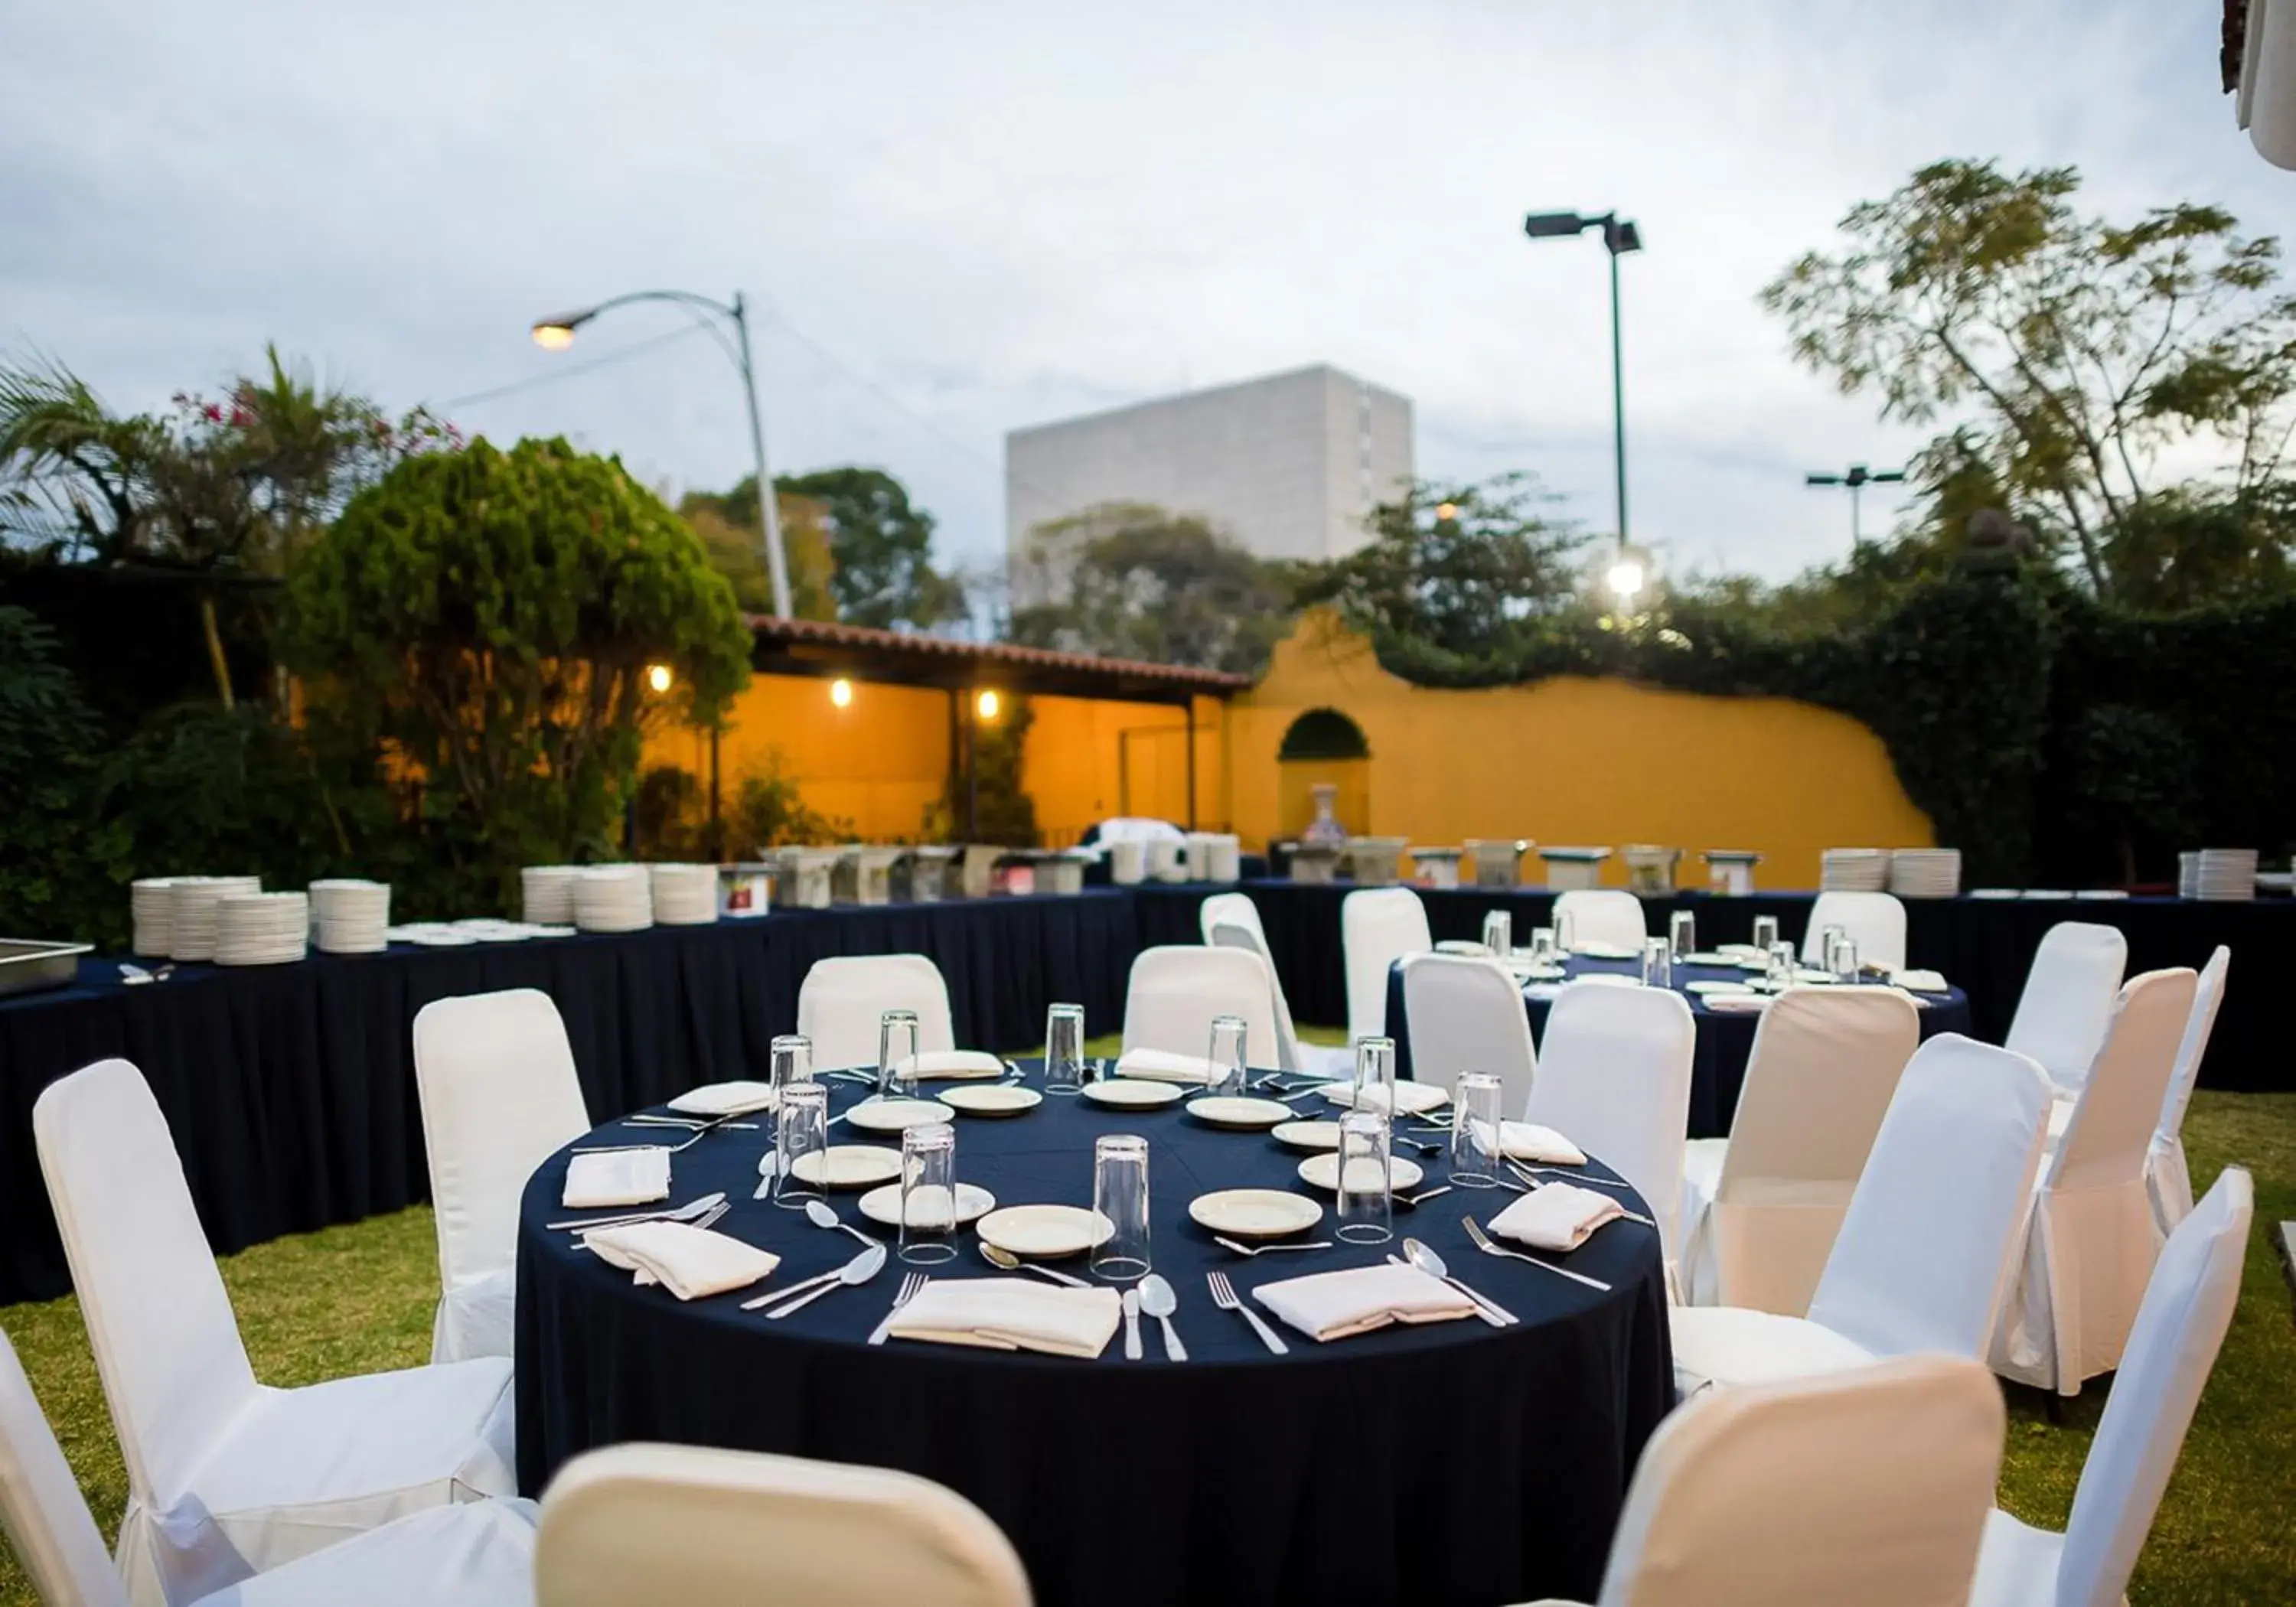 Banquet/Function facilities, Banquet Facilities in Mision Guadalajara